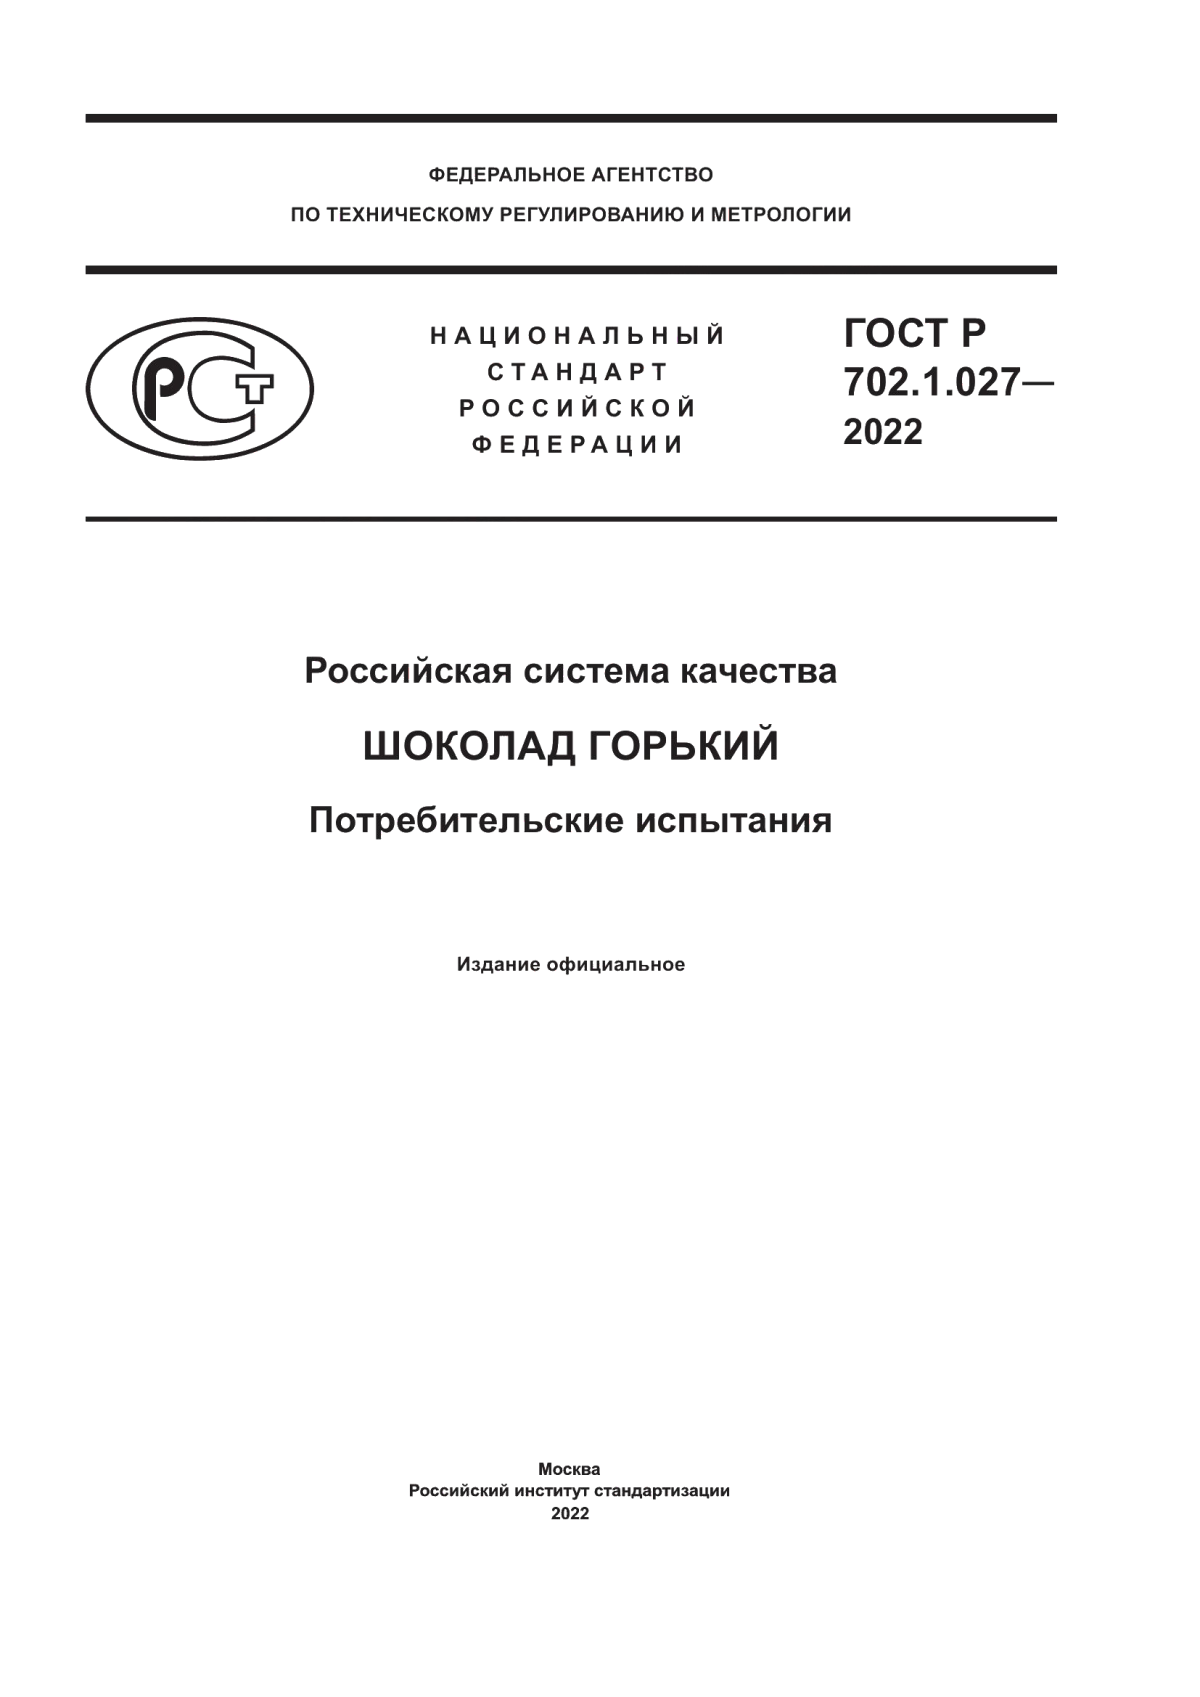 ГОСТ Р 702.1.027-2022 Российская система качества. Шоколад горький. Потребительские испытания